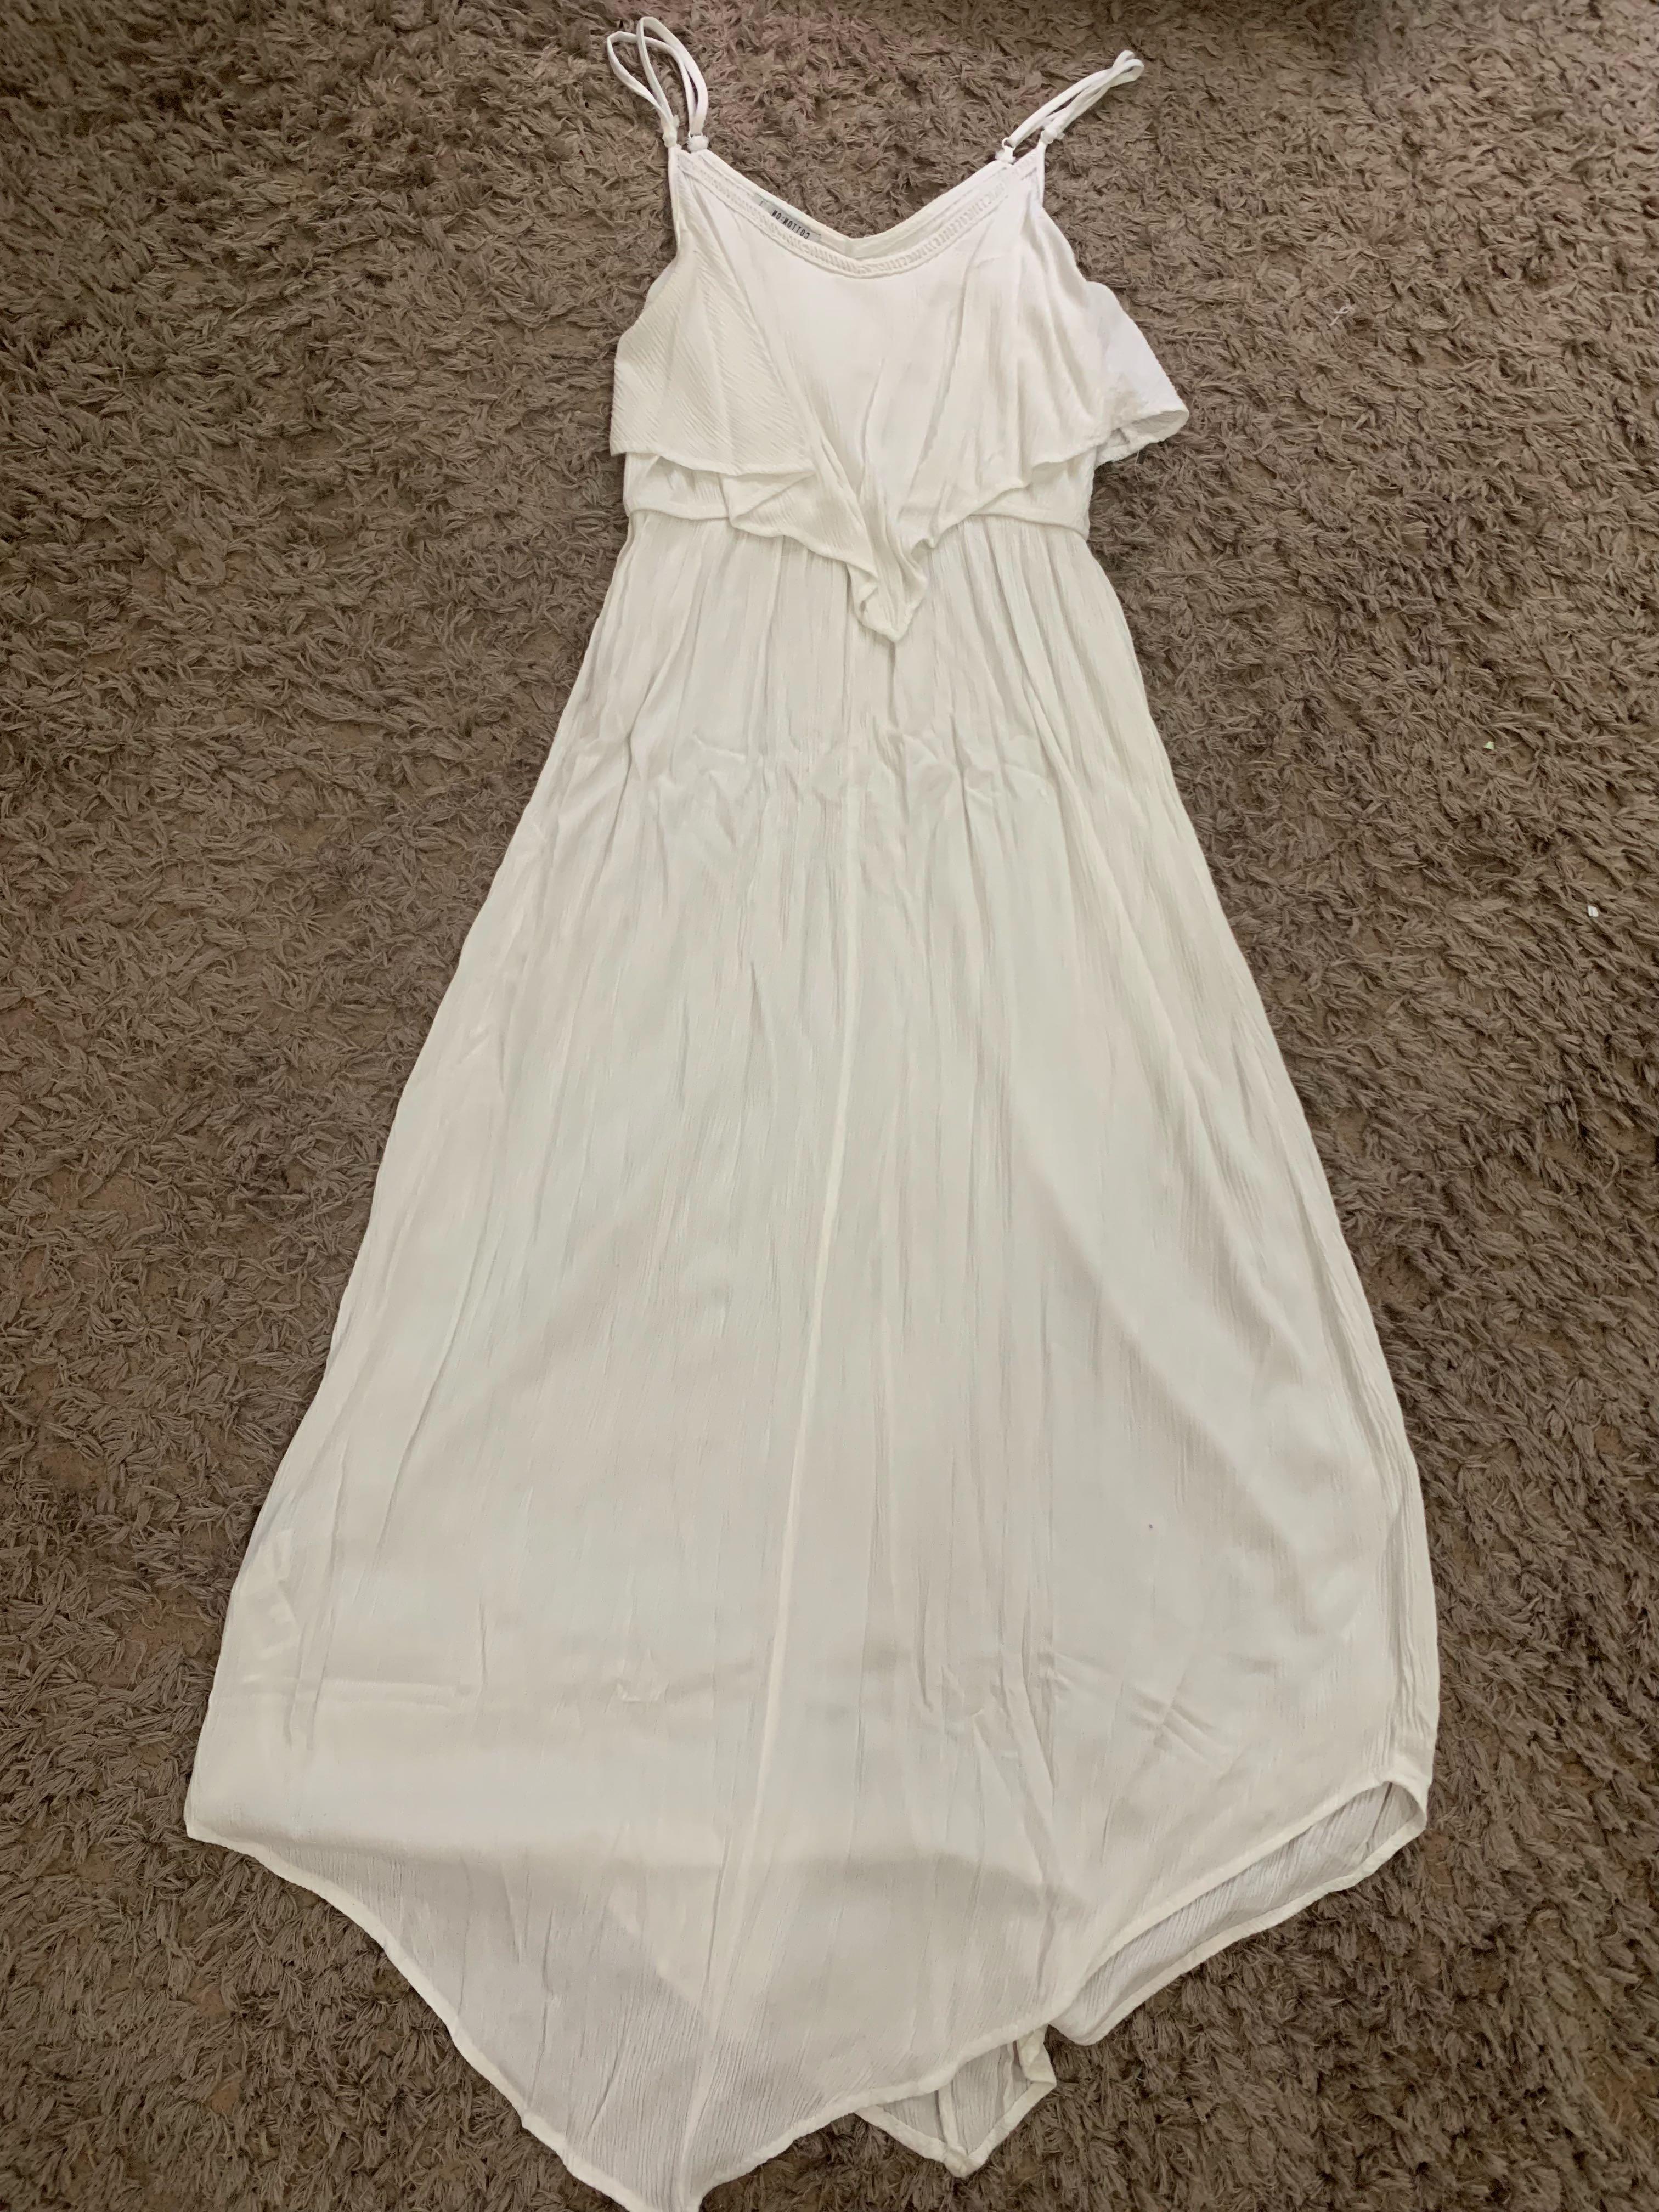 white dress cotton on